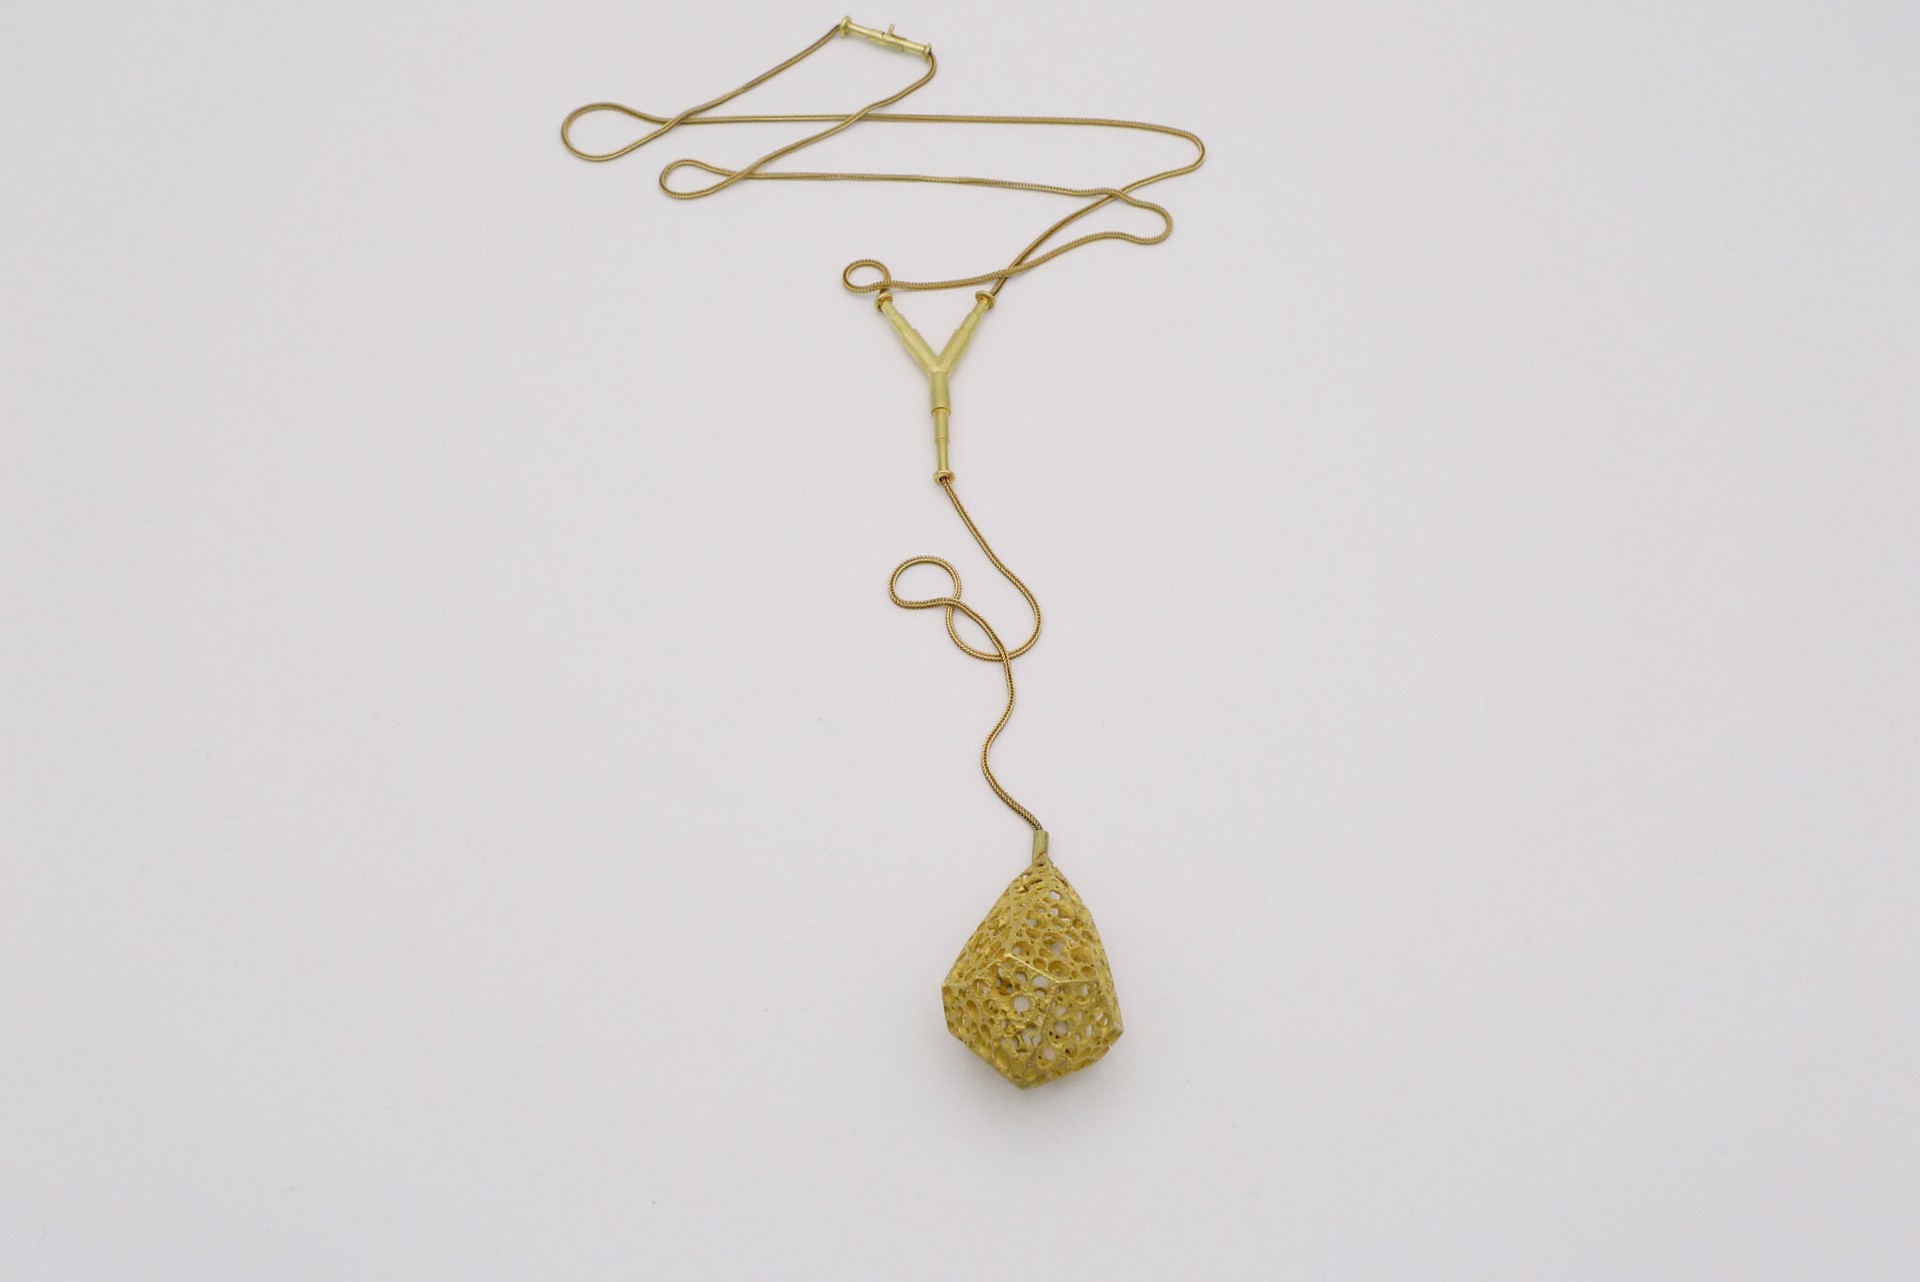 Facet Necklace #22 by Lisa Gralnick